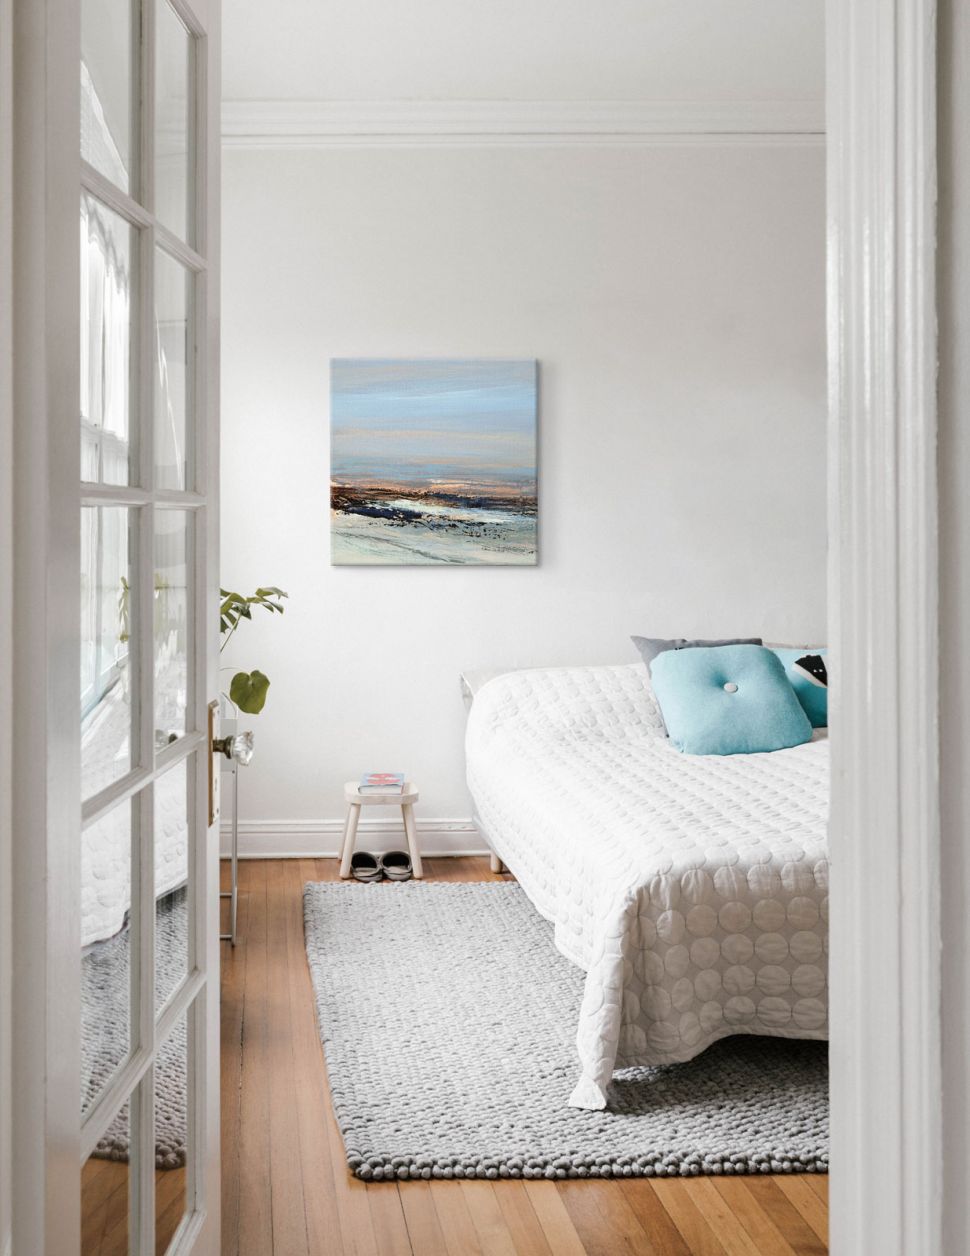 Obraz na płótnie z nadmorskim pejzażem wiszący w jasnej sypialni na białej ścianie